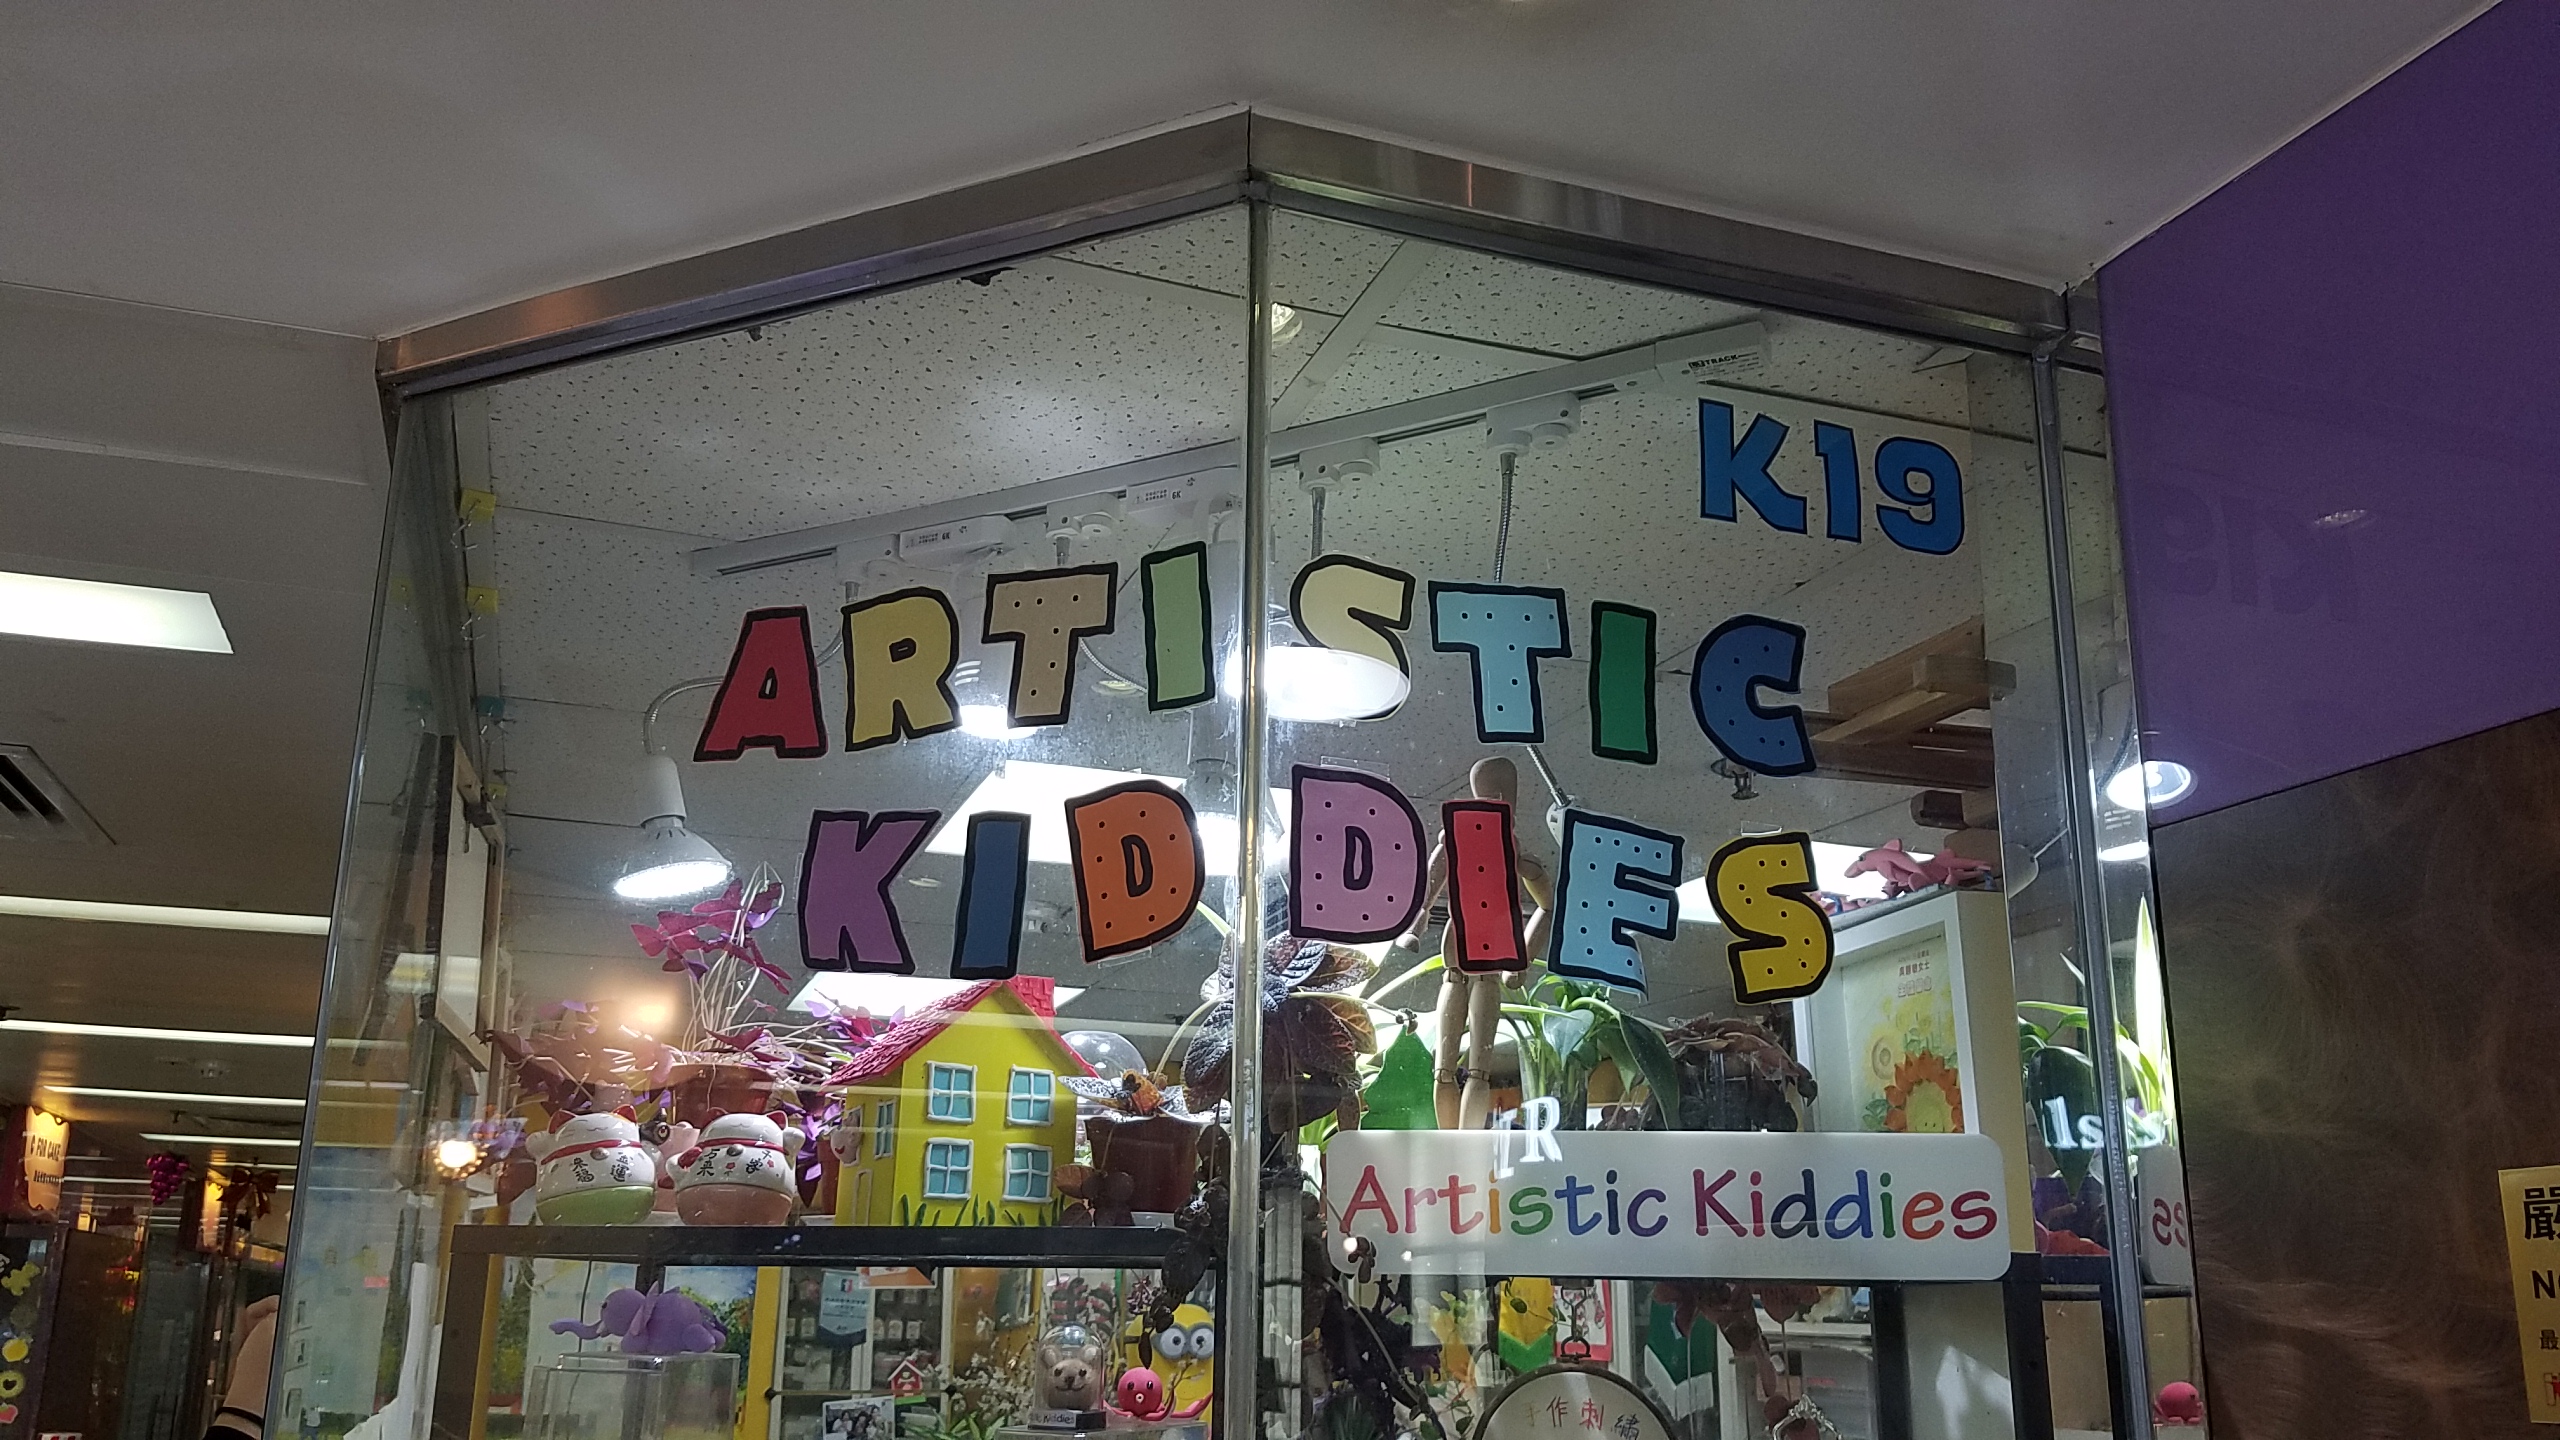 artistic kid dies - Ki9 Artusto Artistic Kiddies